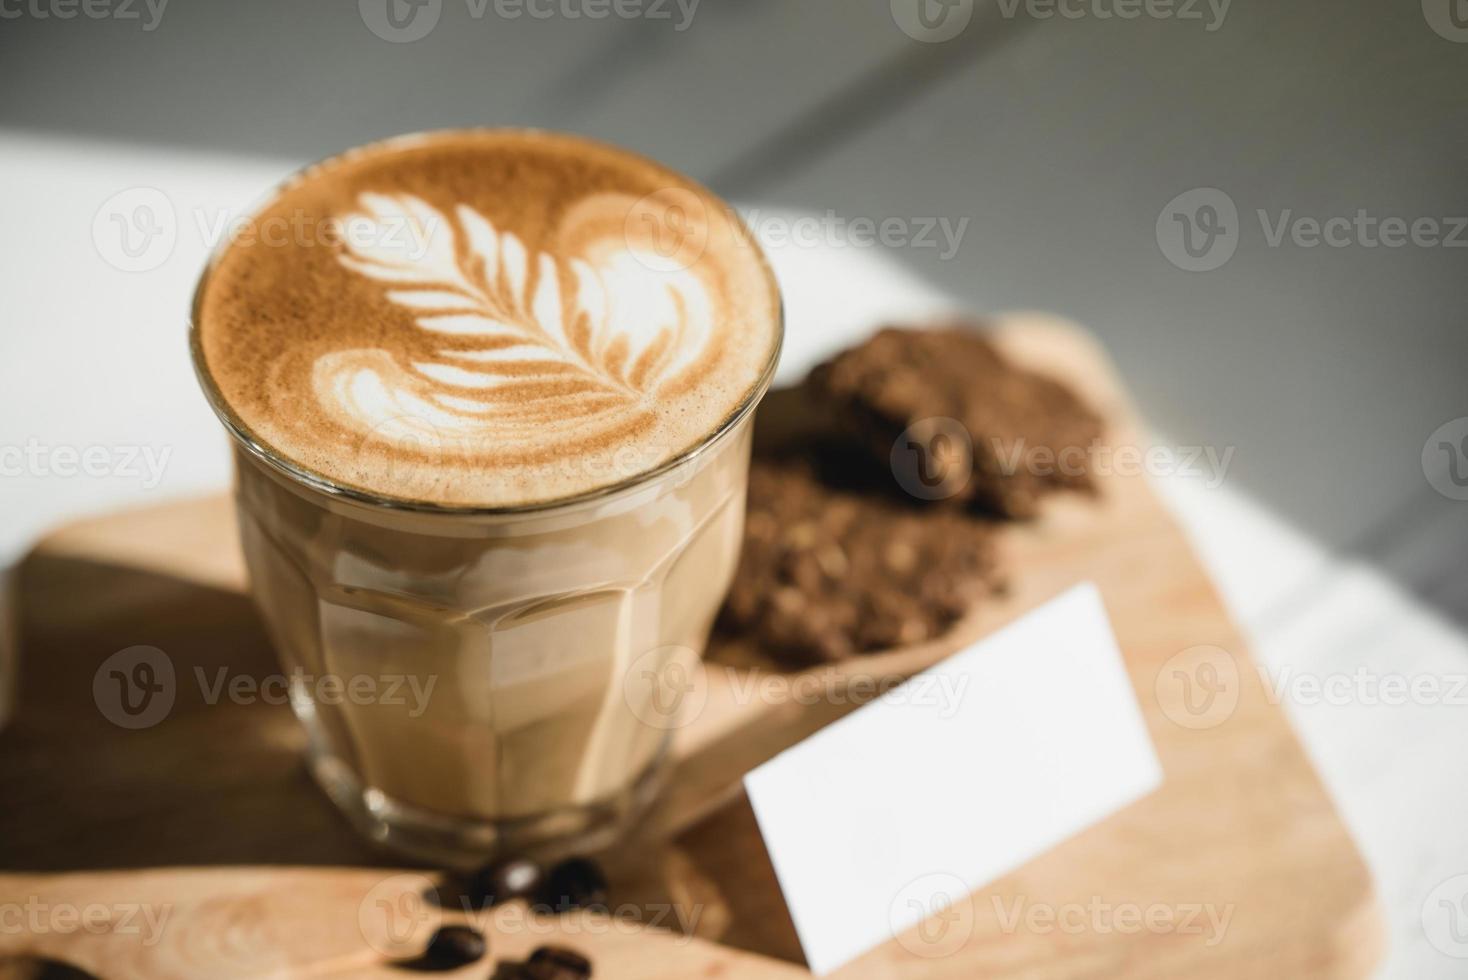 nybryggt cappuccino kaffe med latte art redo att drickas foto